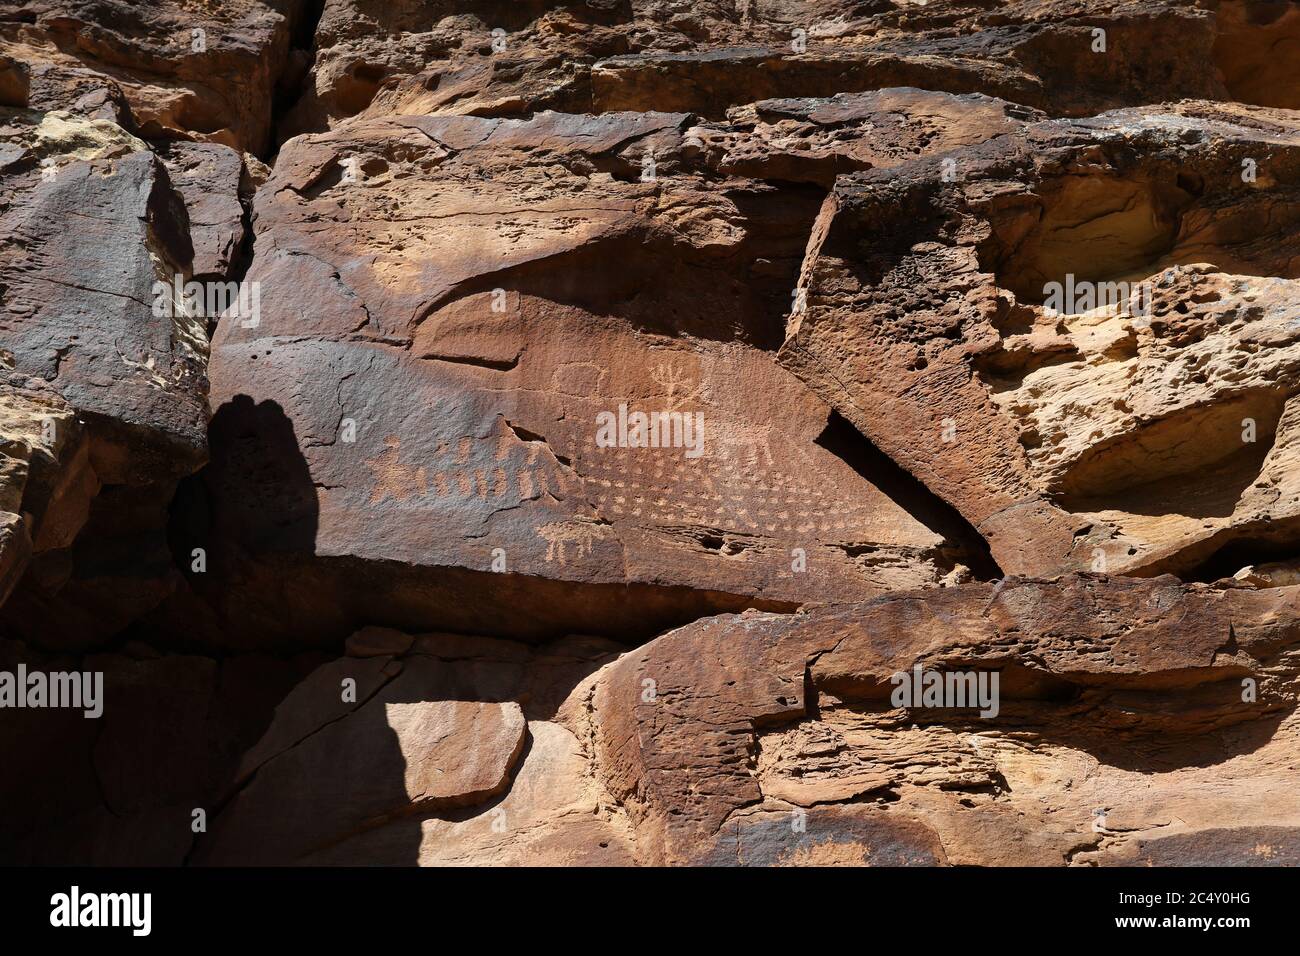 Cerf de pétroglyphe d'art rupestre indien natif américain 1452. Nine Mile Canyon, Utah. La plus longue galerie d'art au monde de l'Amérique ancienne Banque D'Images